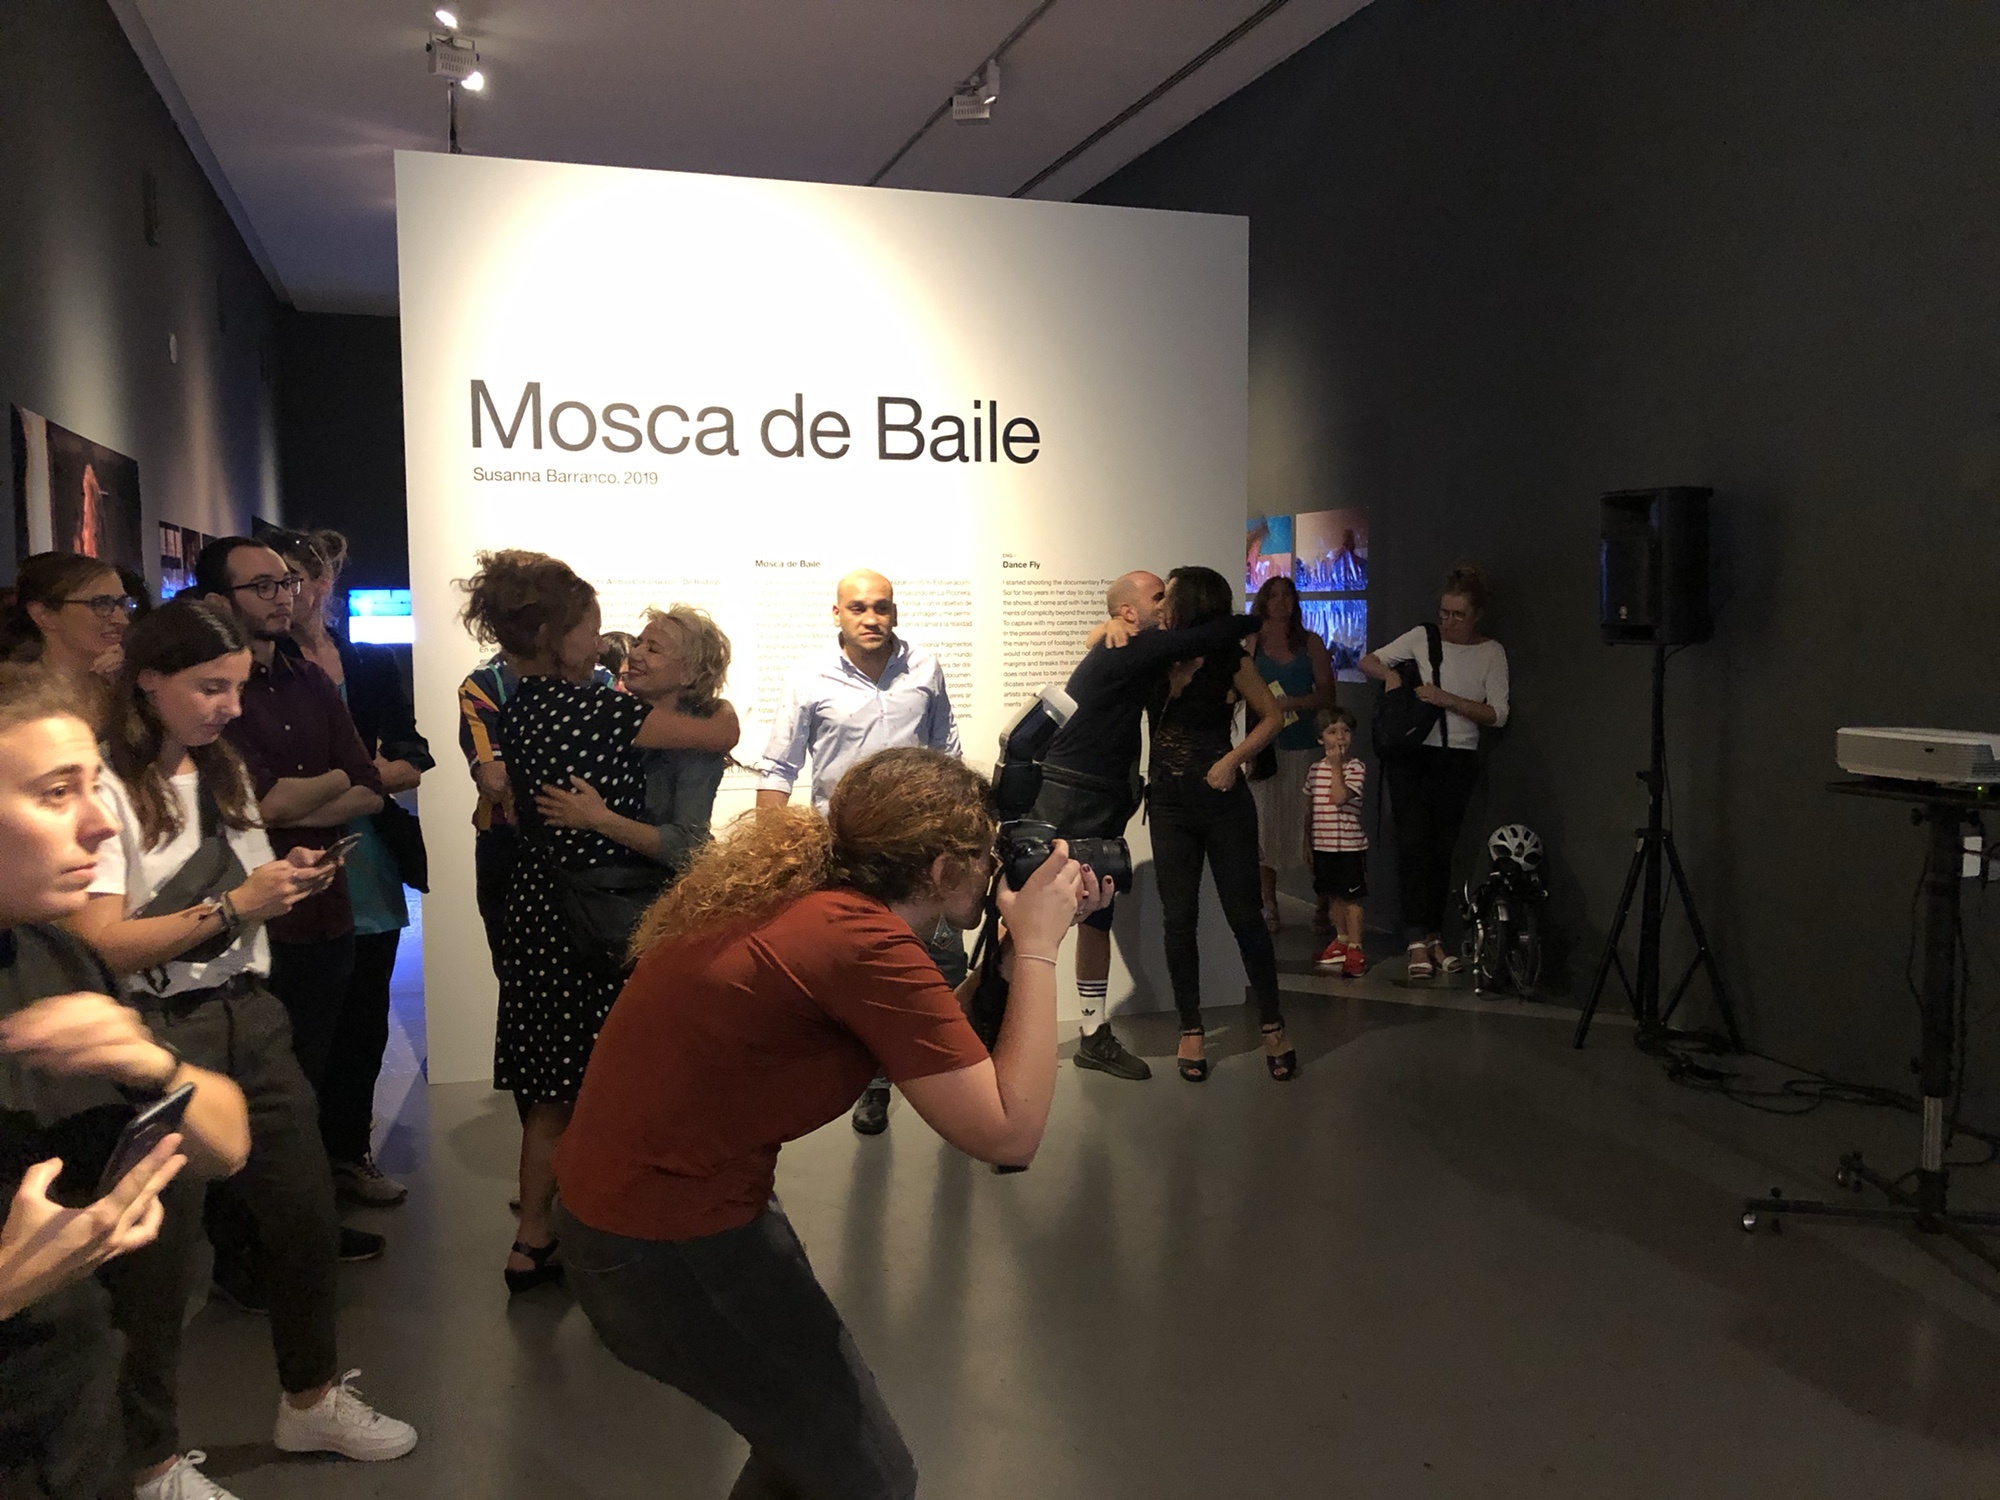 Así fue la inauguración de la #exposición fotográfica "Mosca de baile" de Sol Picó cia. de danza